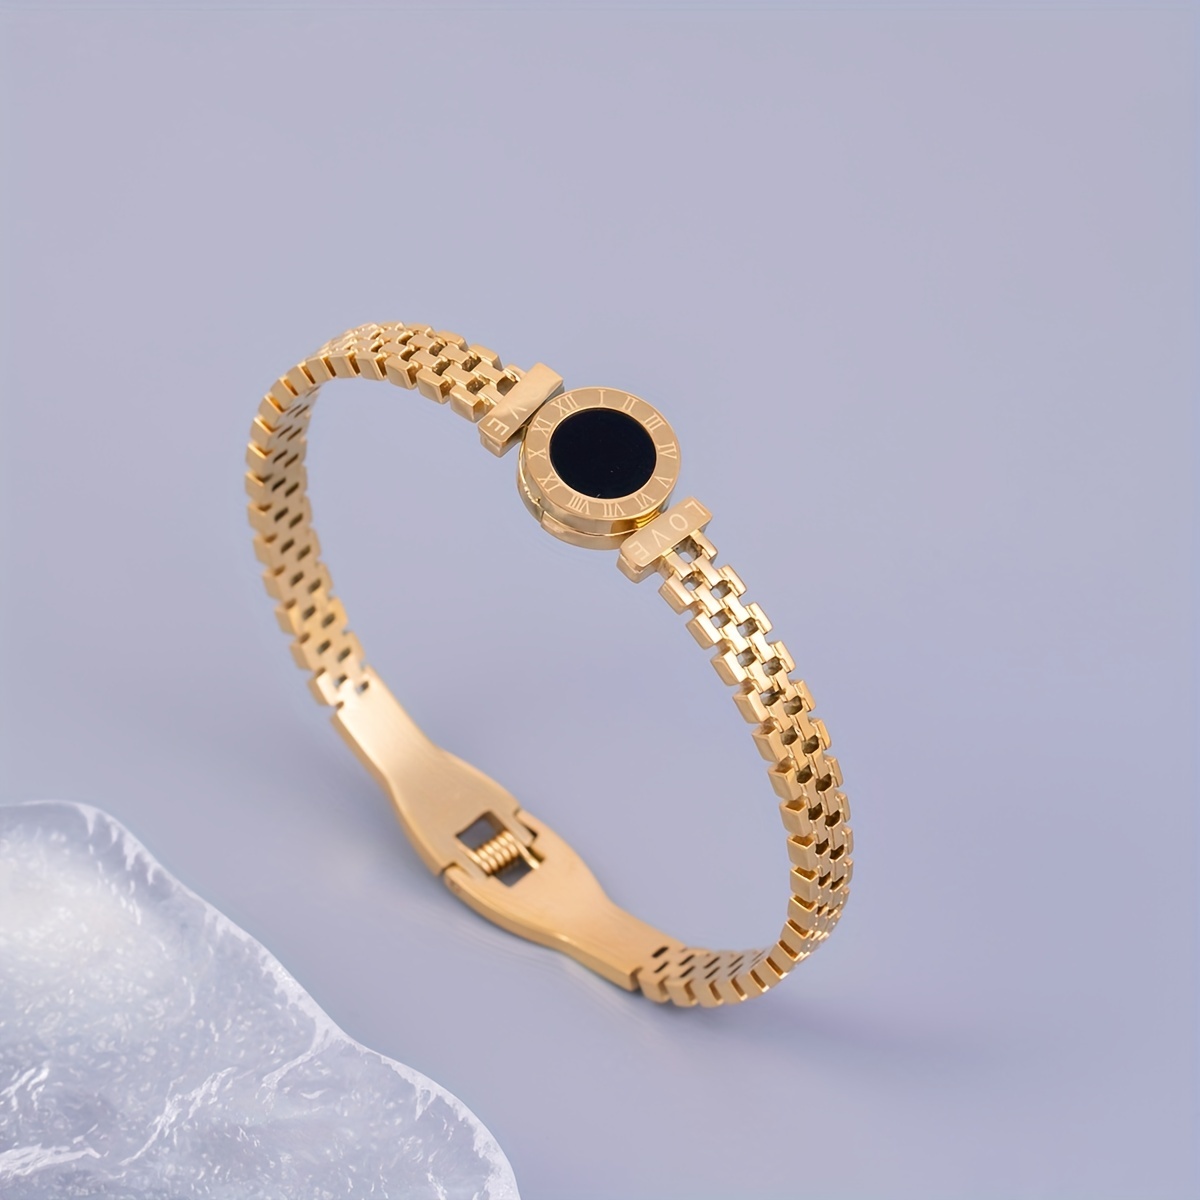 

Bracelet vintage avec horloge à chiffres romains dorés, simple et élégant, en acier inoxydable, cadeau unisexe pour les couples et la famille.